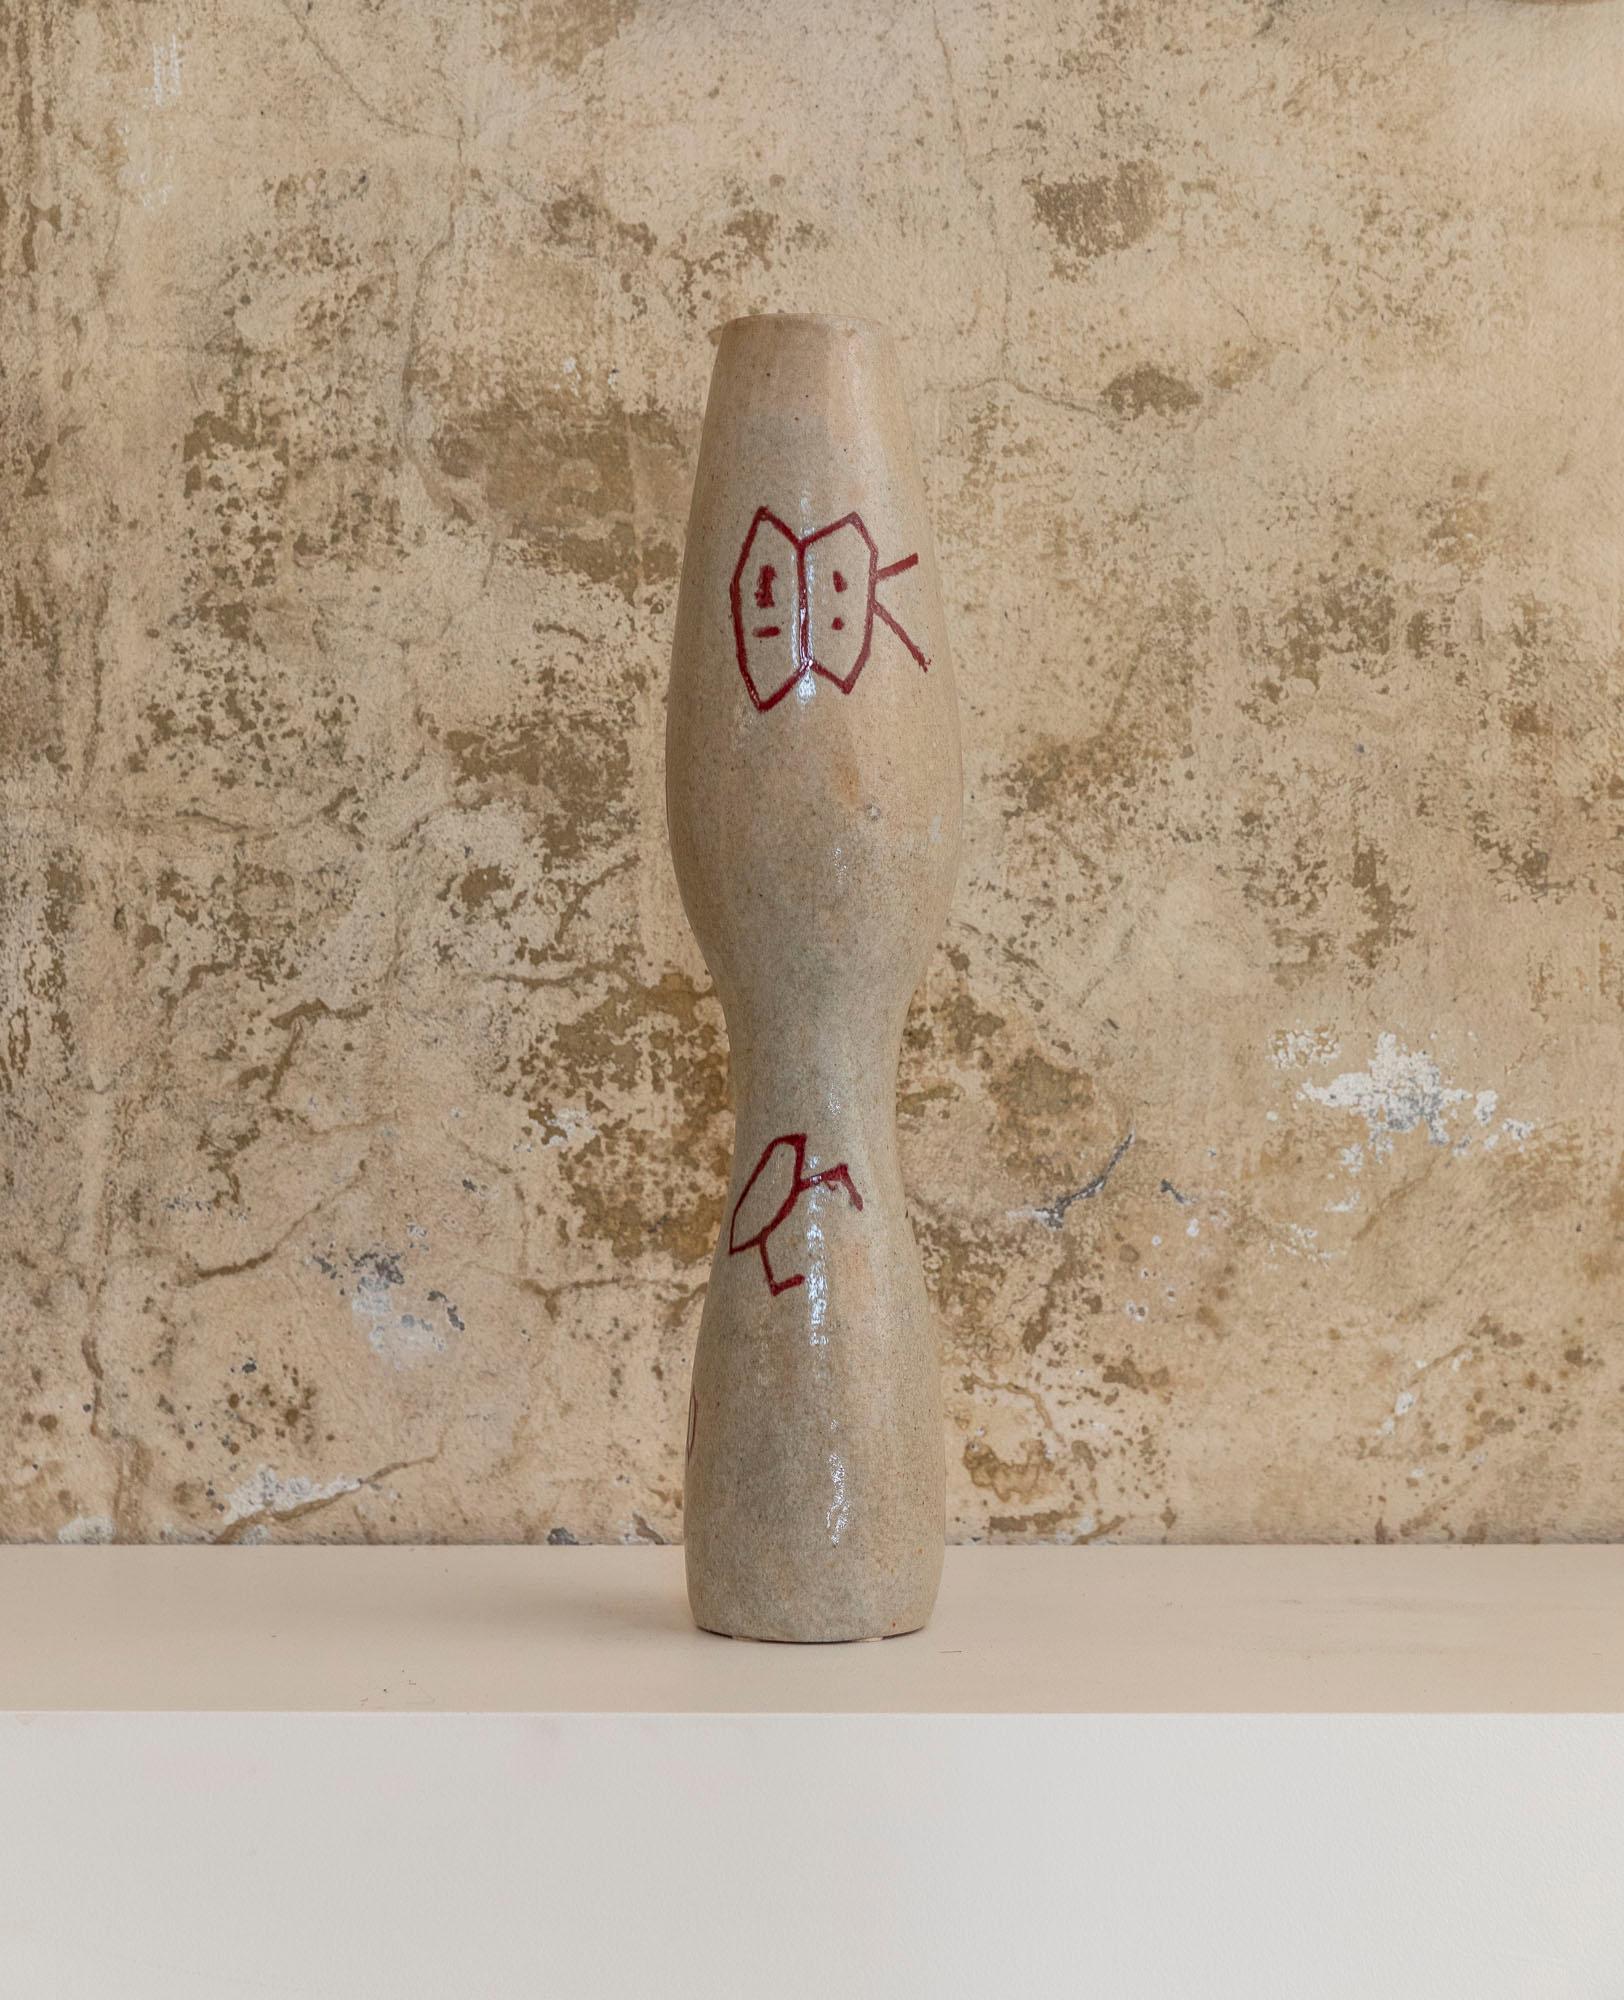 Polychrome Majolika mit einer hohen und spitz zulaufenden Form, die Vase ist in hellen Brauntönen mit roten Verzierungen. 
Hergestellt von Giovanni Petucco, Italien, um 1950 
Der Artikel ist auf der Unterseite signiert.